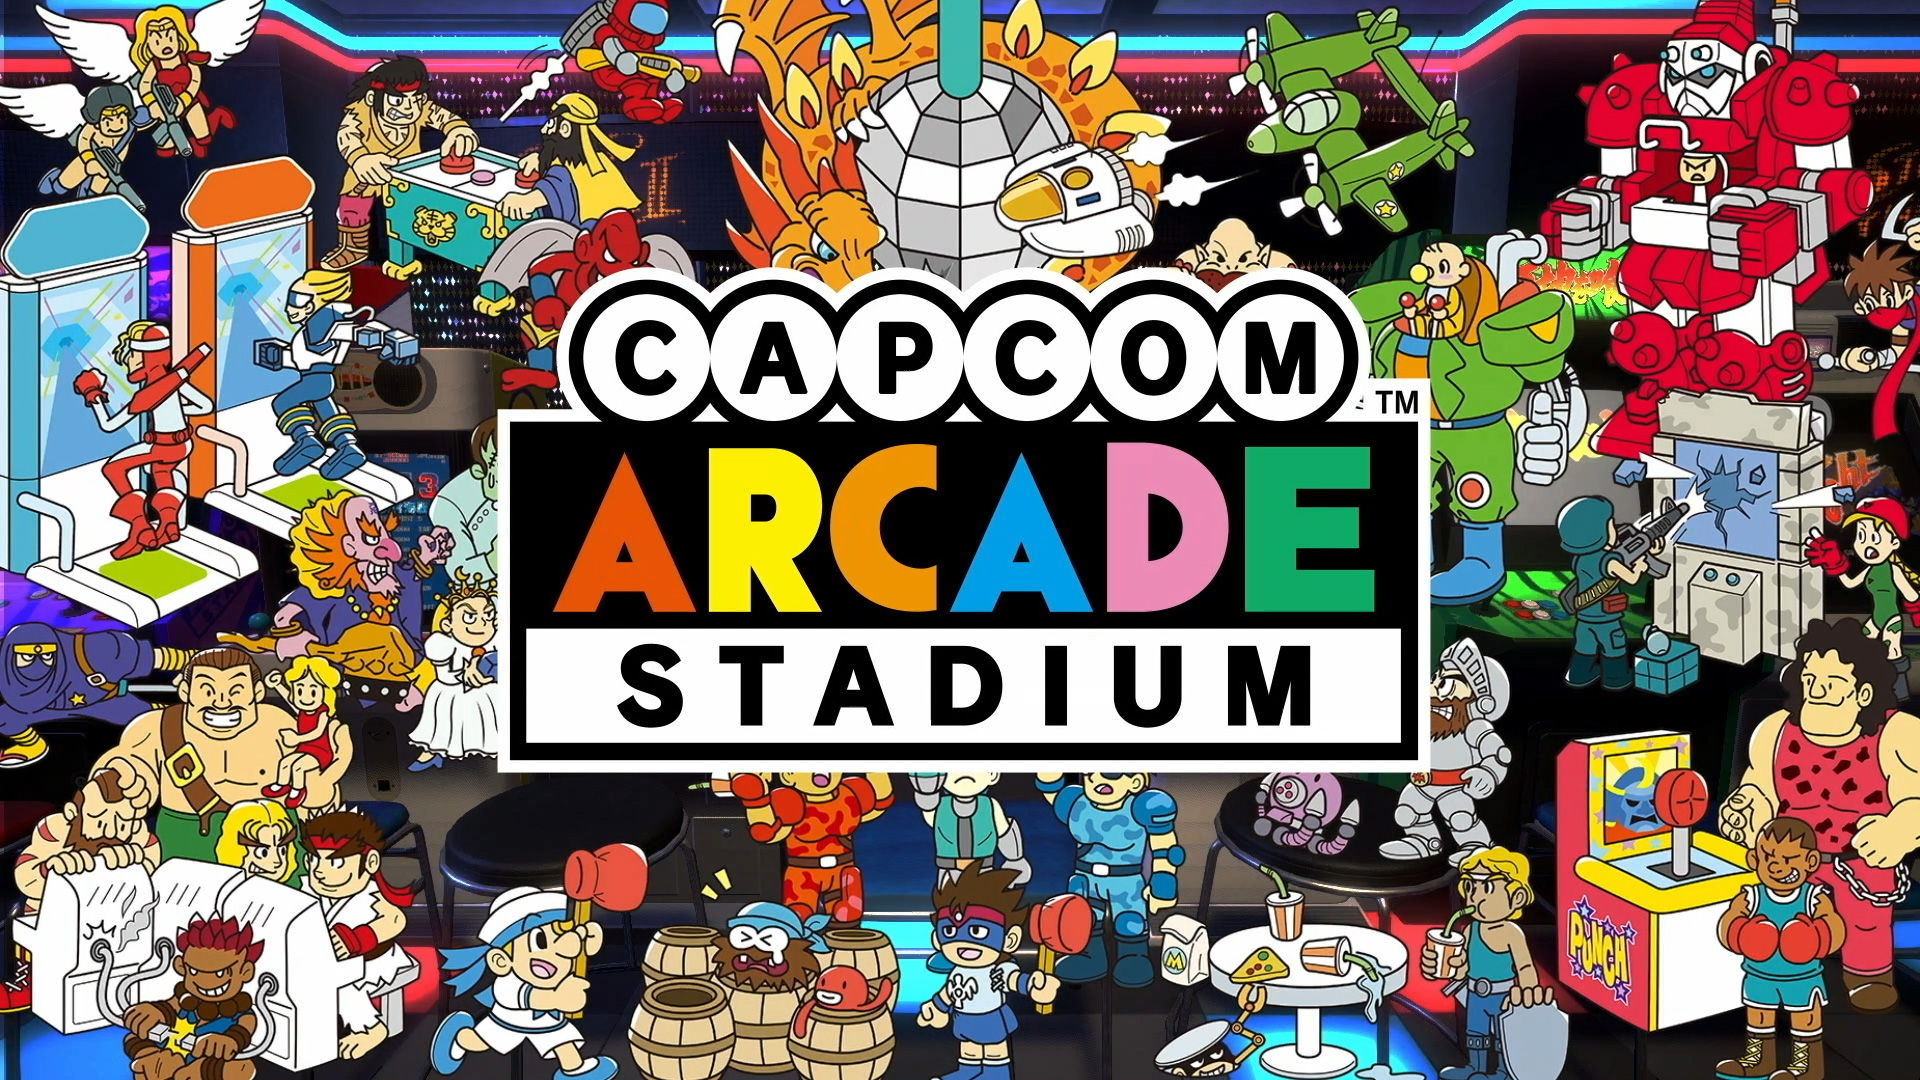 Arcade stadium. Capcom Arcade 2nd Stadium. Capcom Arcade game. Capcom Arcade Stadium Nintendo Switch. Capcom Arcade Stadium ps4.